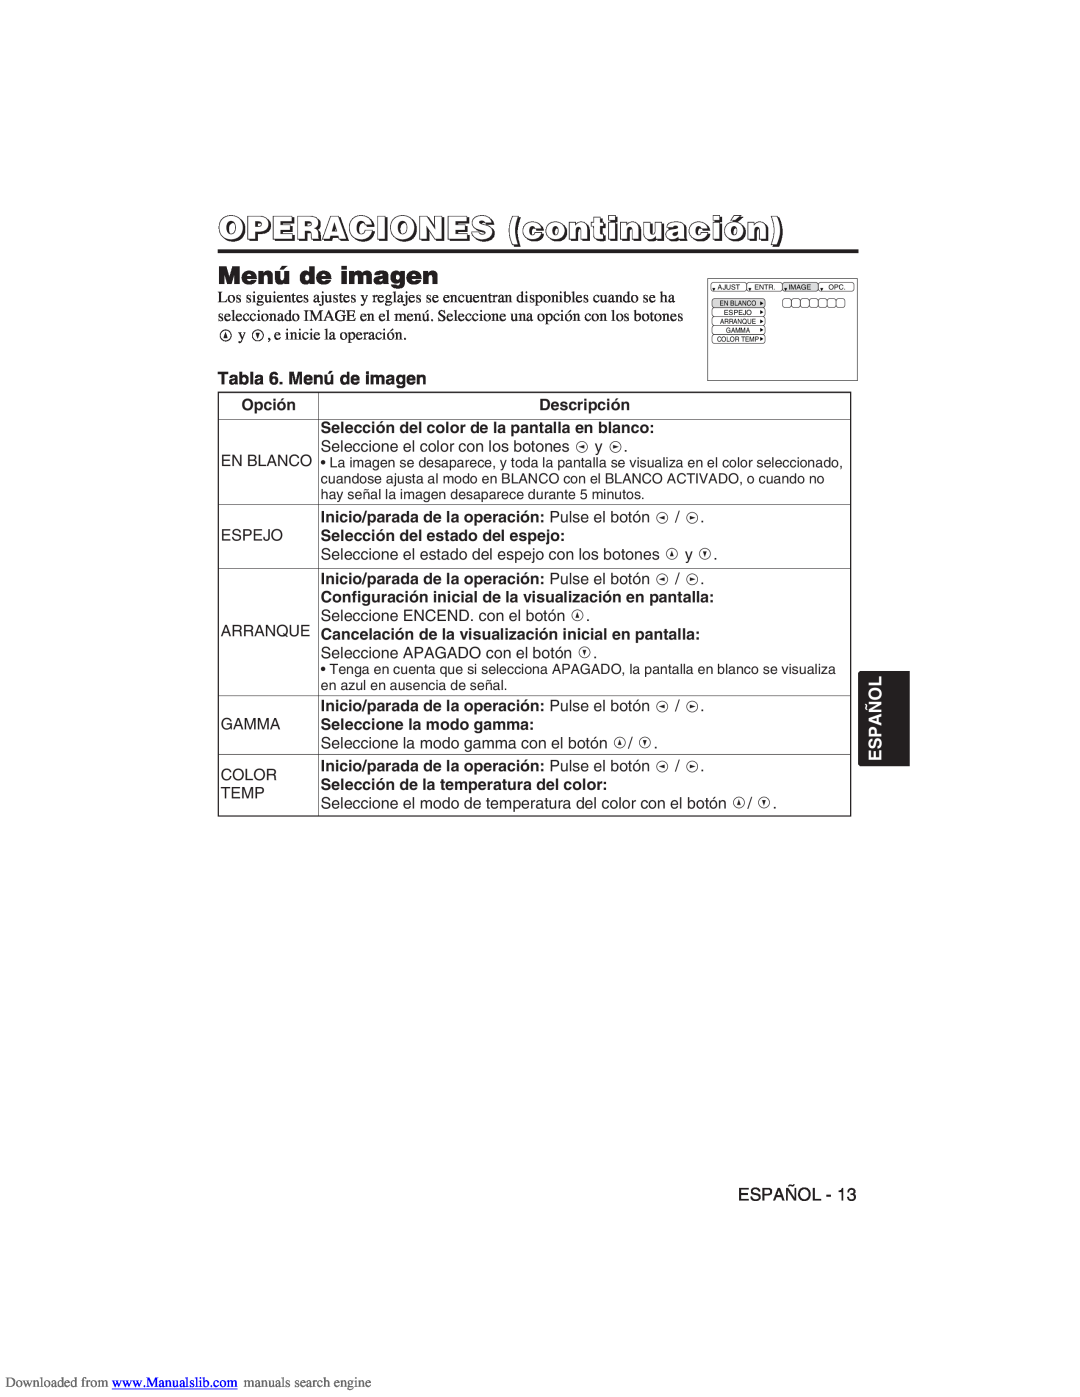 Hitachi CP-X275W user manual Tabla 6. Menú de imagen, OPERACIONES continuación, Español 